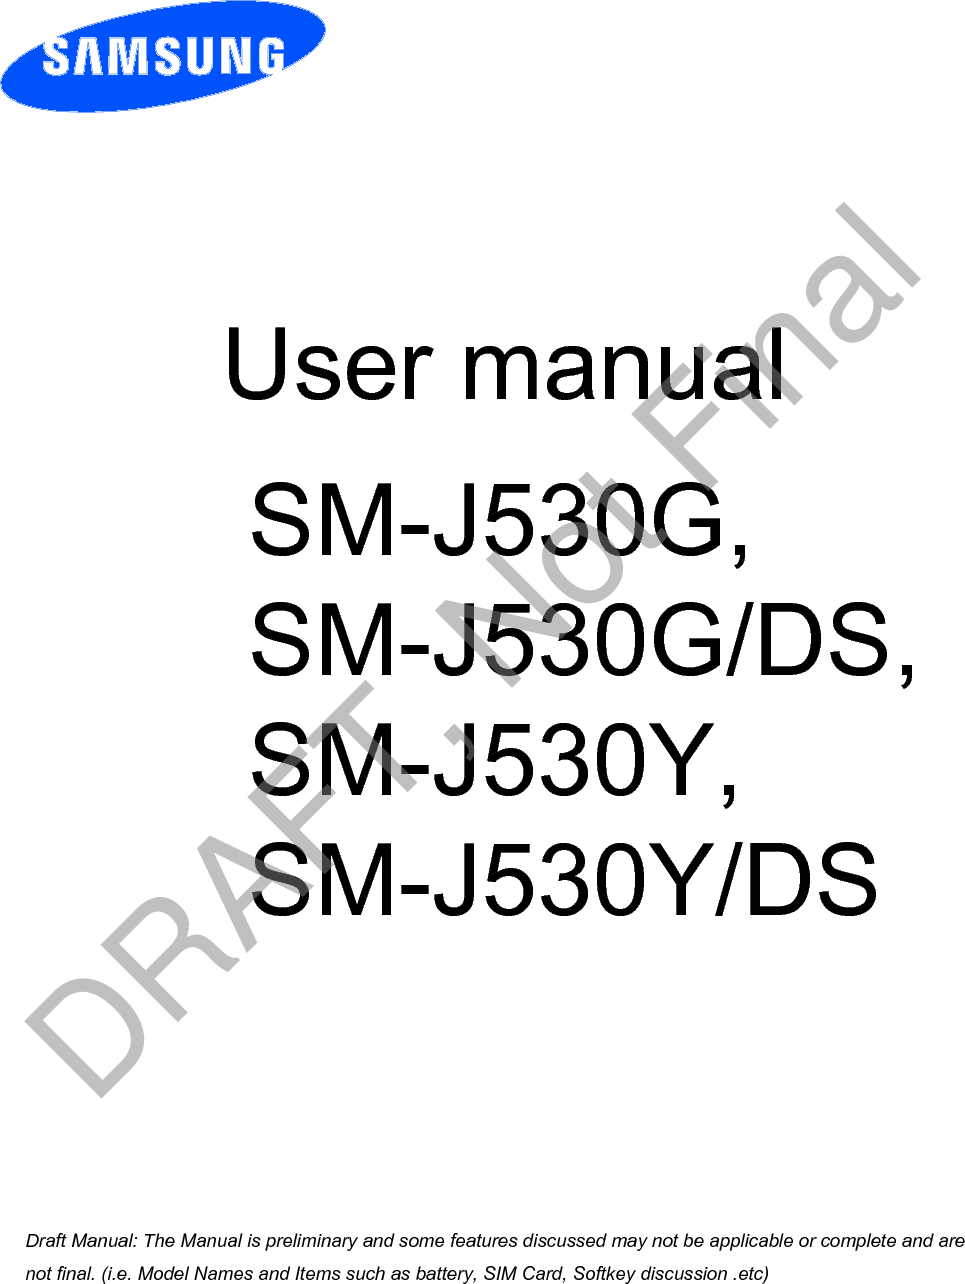  User manual SM-J530G,SM-J530G/DS,SM-J530Y,SM-J530Y/DSa ana  ana  na and  a dd a n  aa   and a n na  d a and   a a  ad  dn DRAFT, Not Final